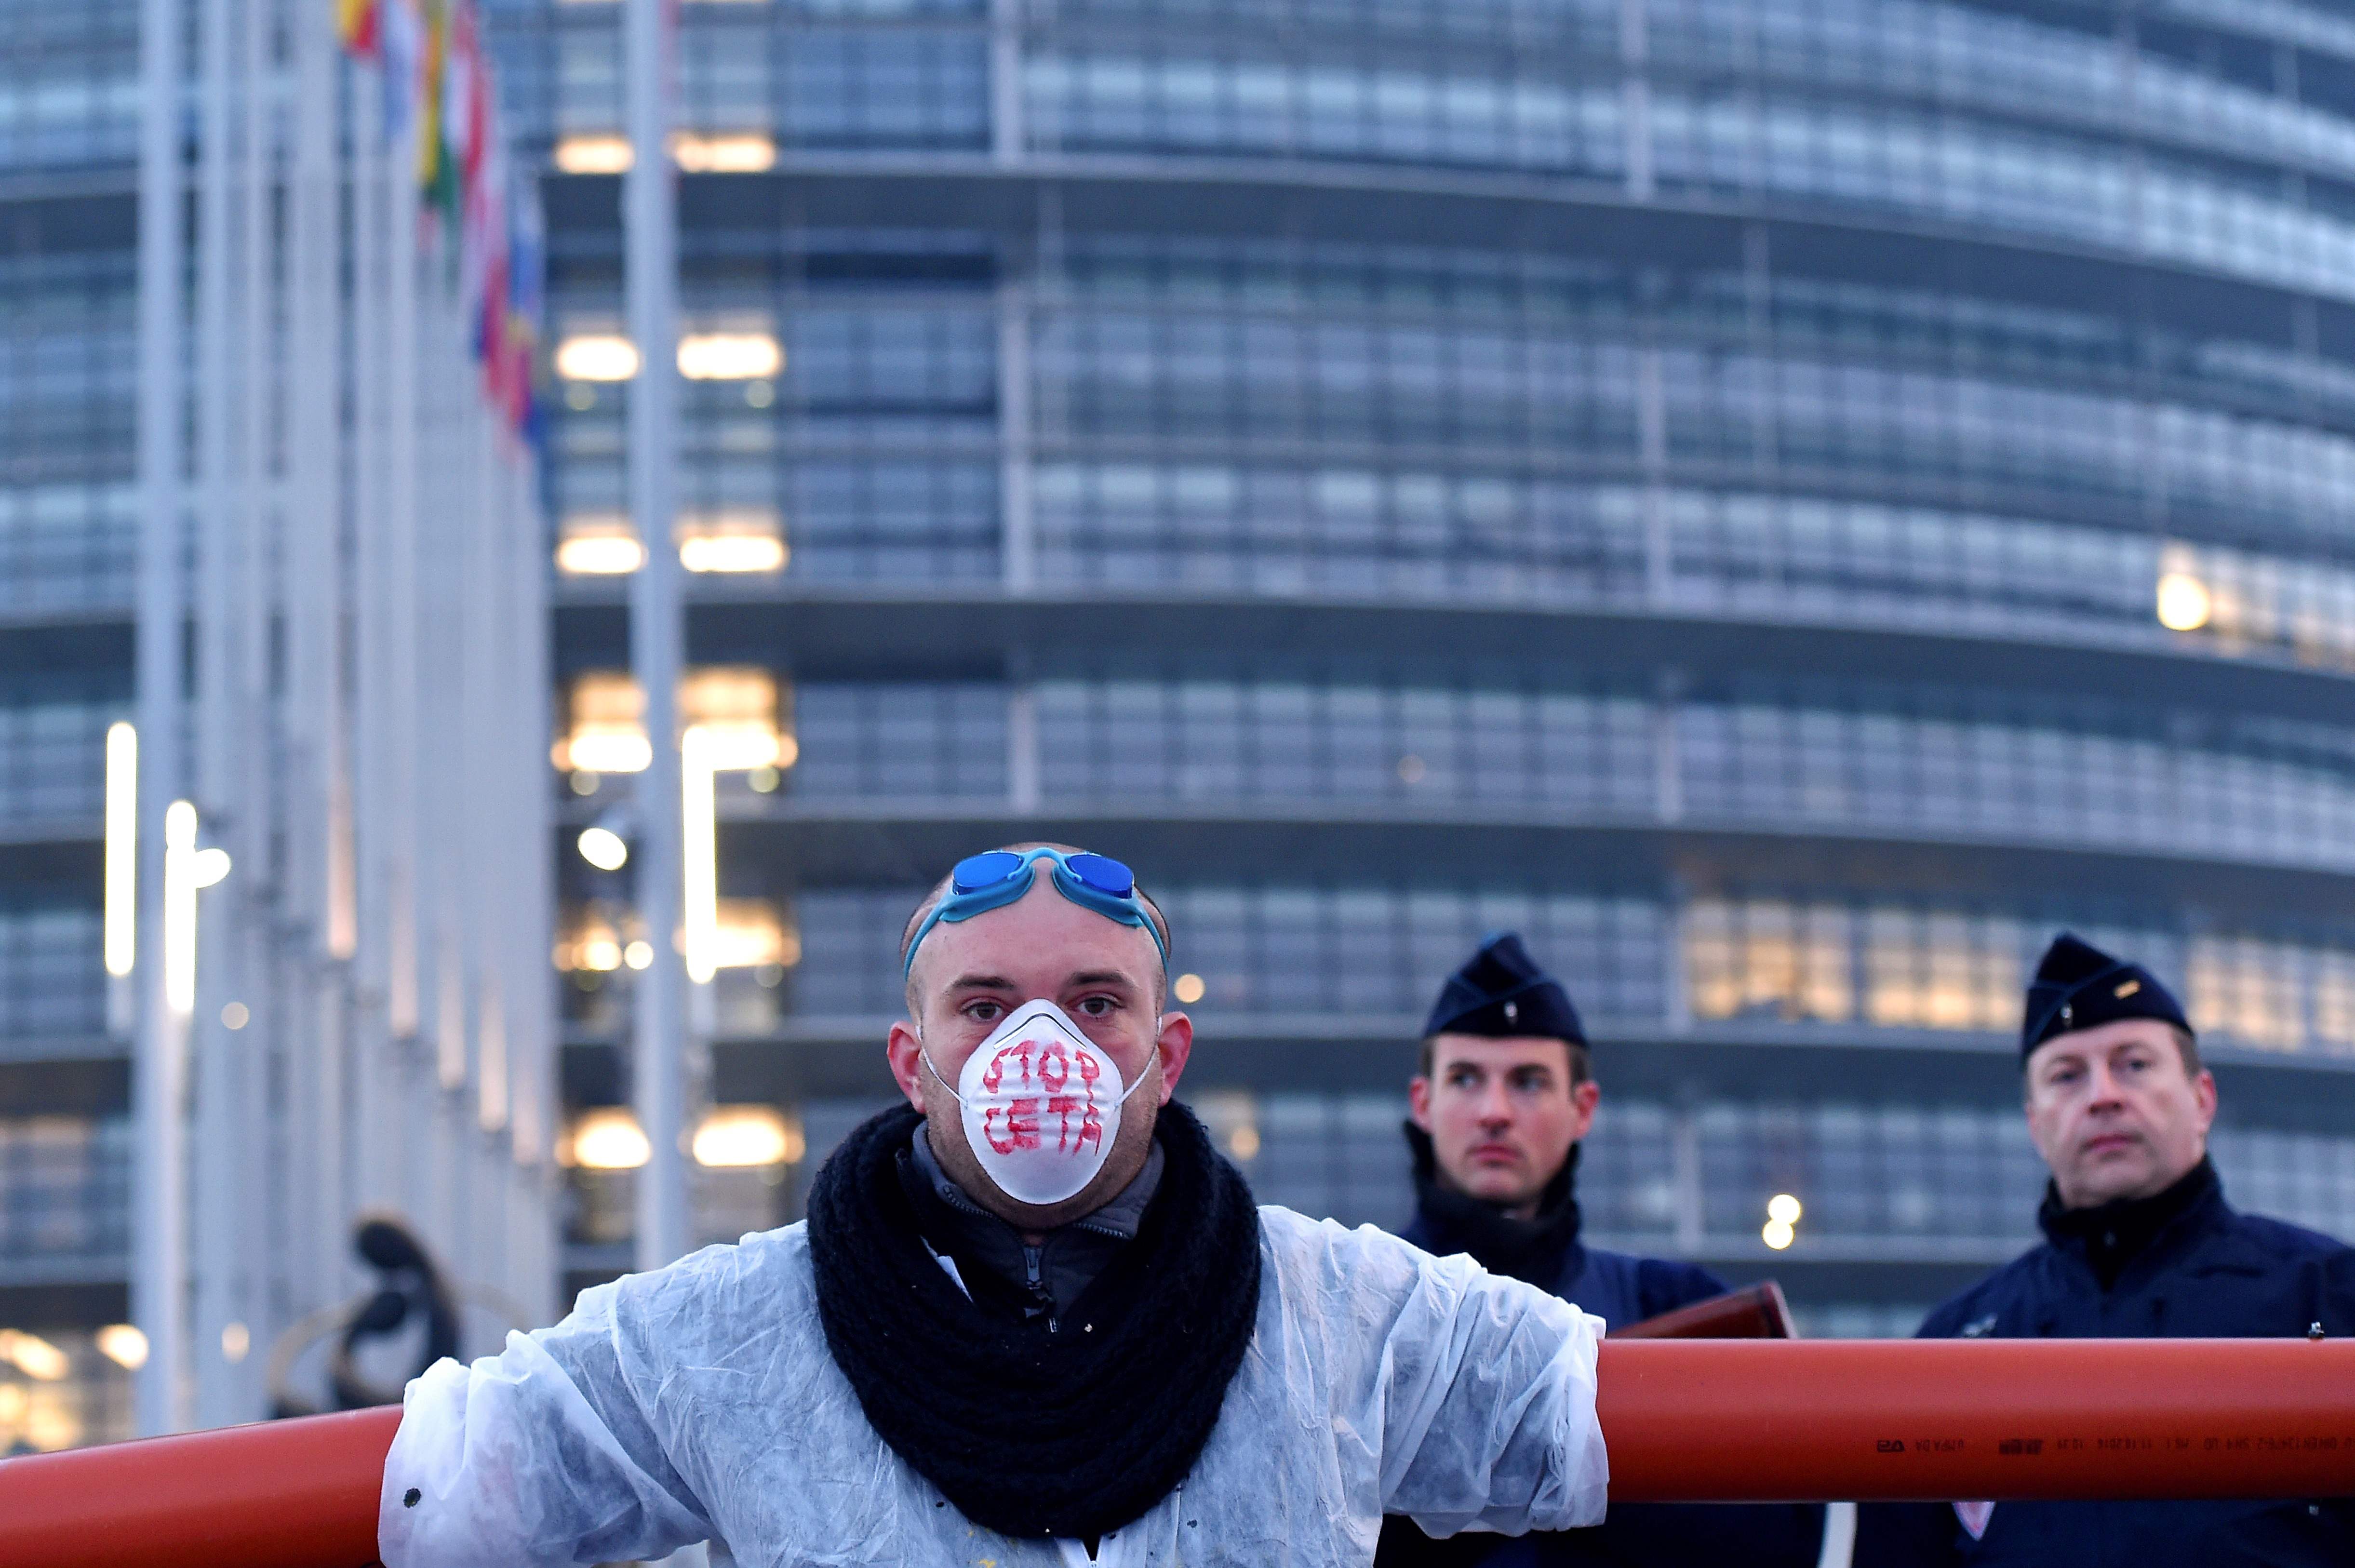 متظاهر يقف أمام الشرطة الفرنسية بمحيط البرلمان الأوروبى للاحتجاج على اتفاقية اقتصادية بين الاتحاد الأوروبى وكندا